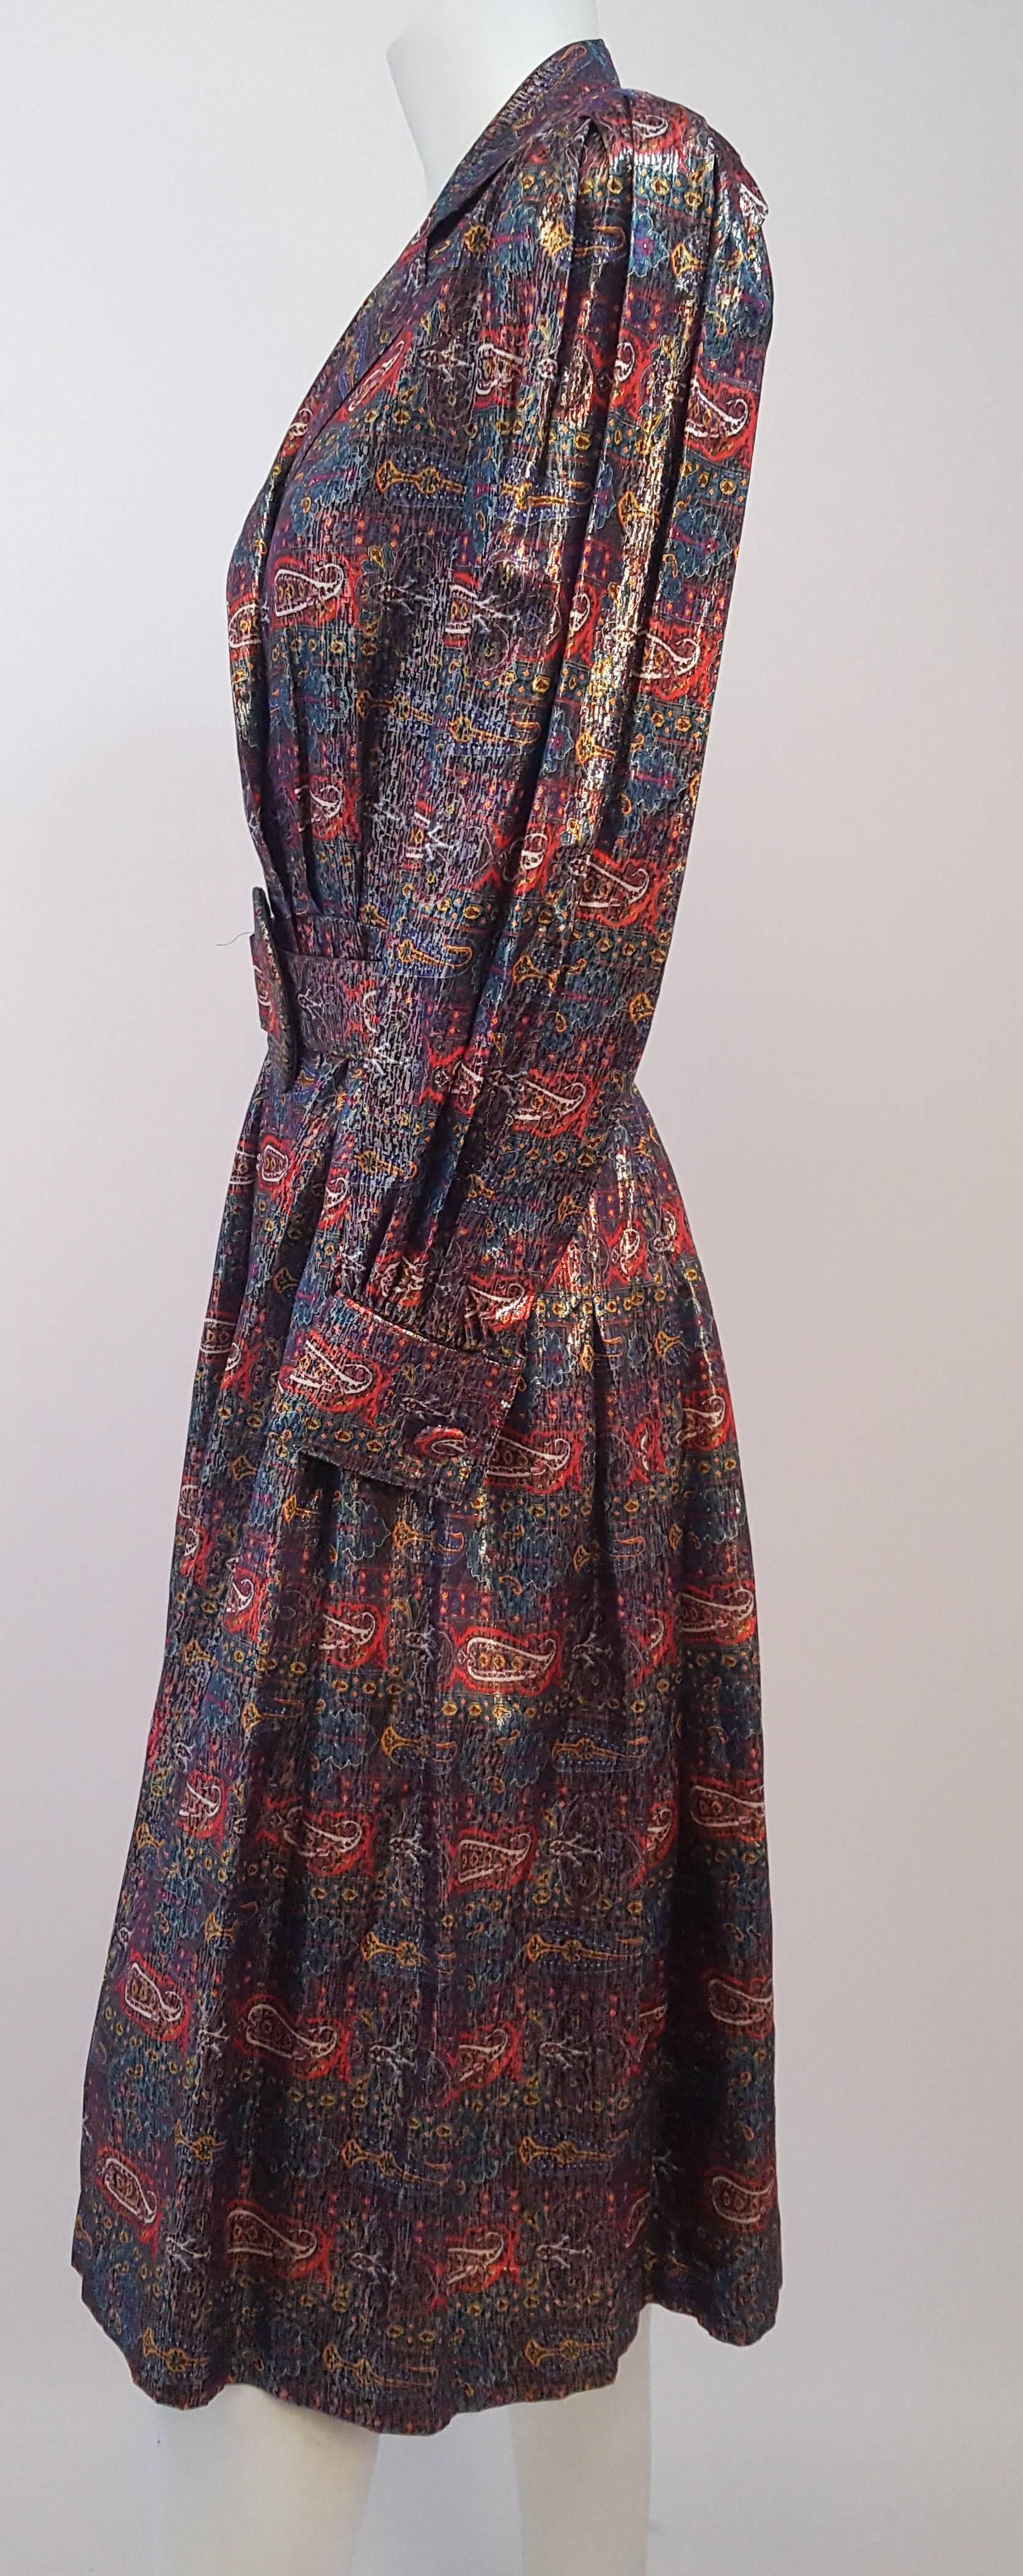 robe à carreaux métalliques Adele Simpson des années 80. Ceinture assortie. Fermeture par bouton-pression. 